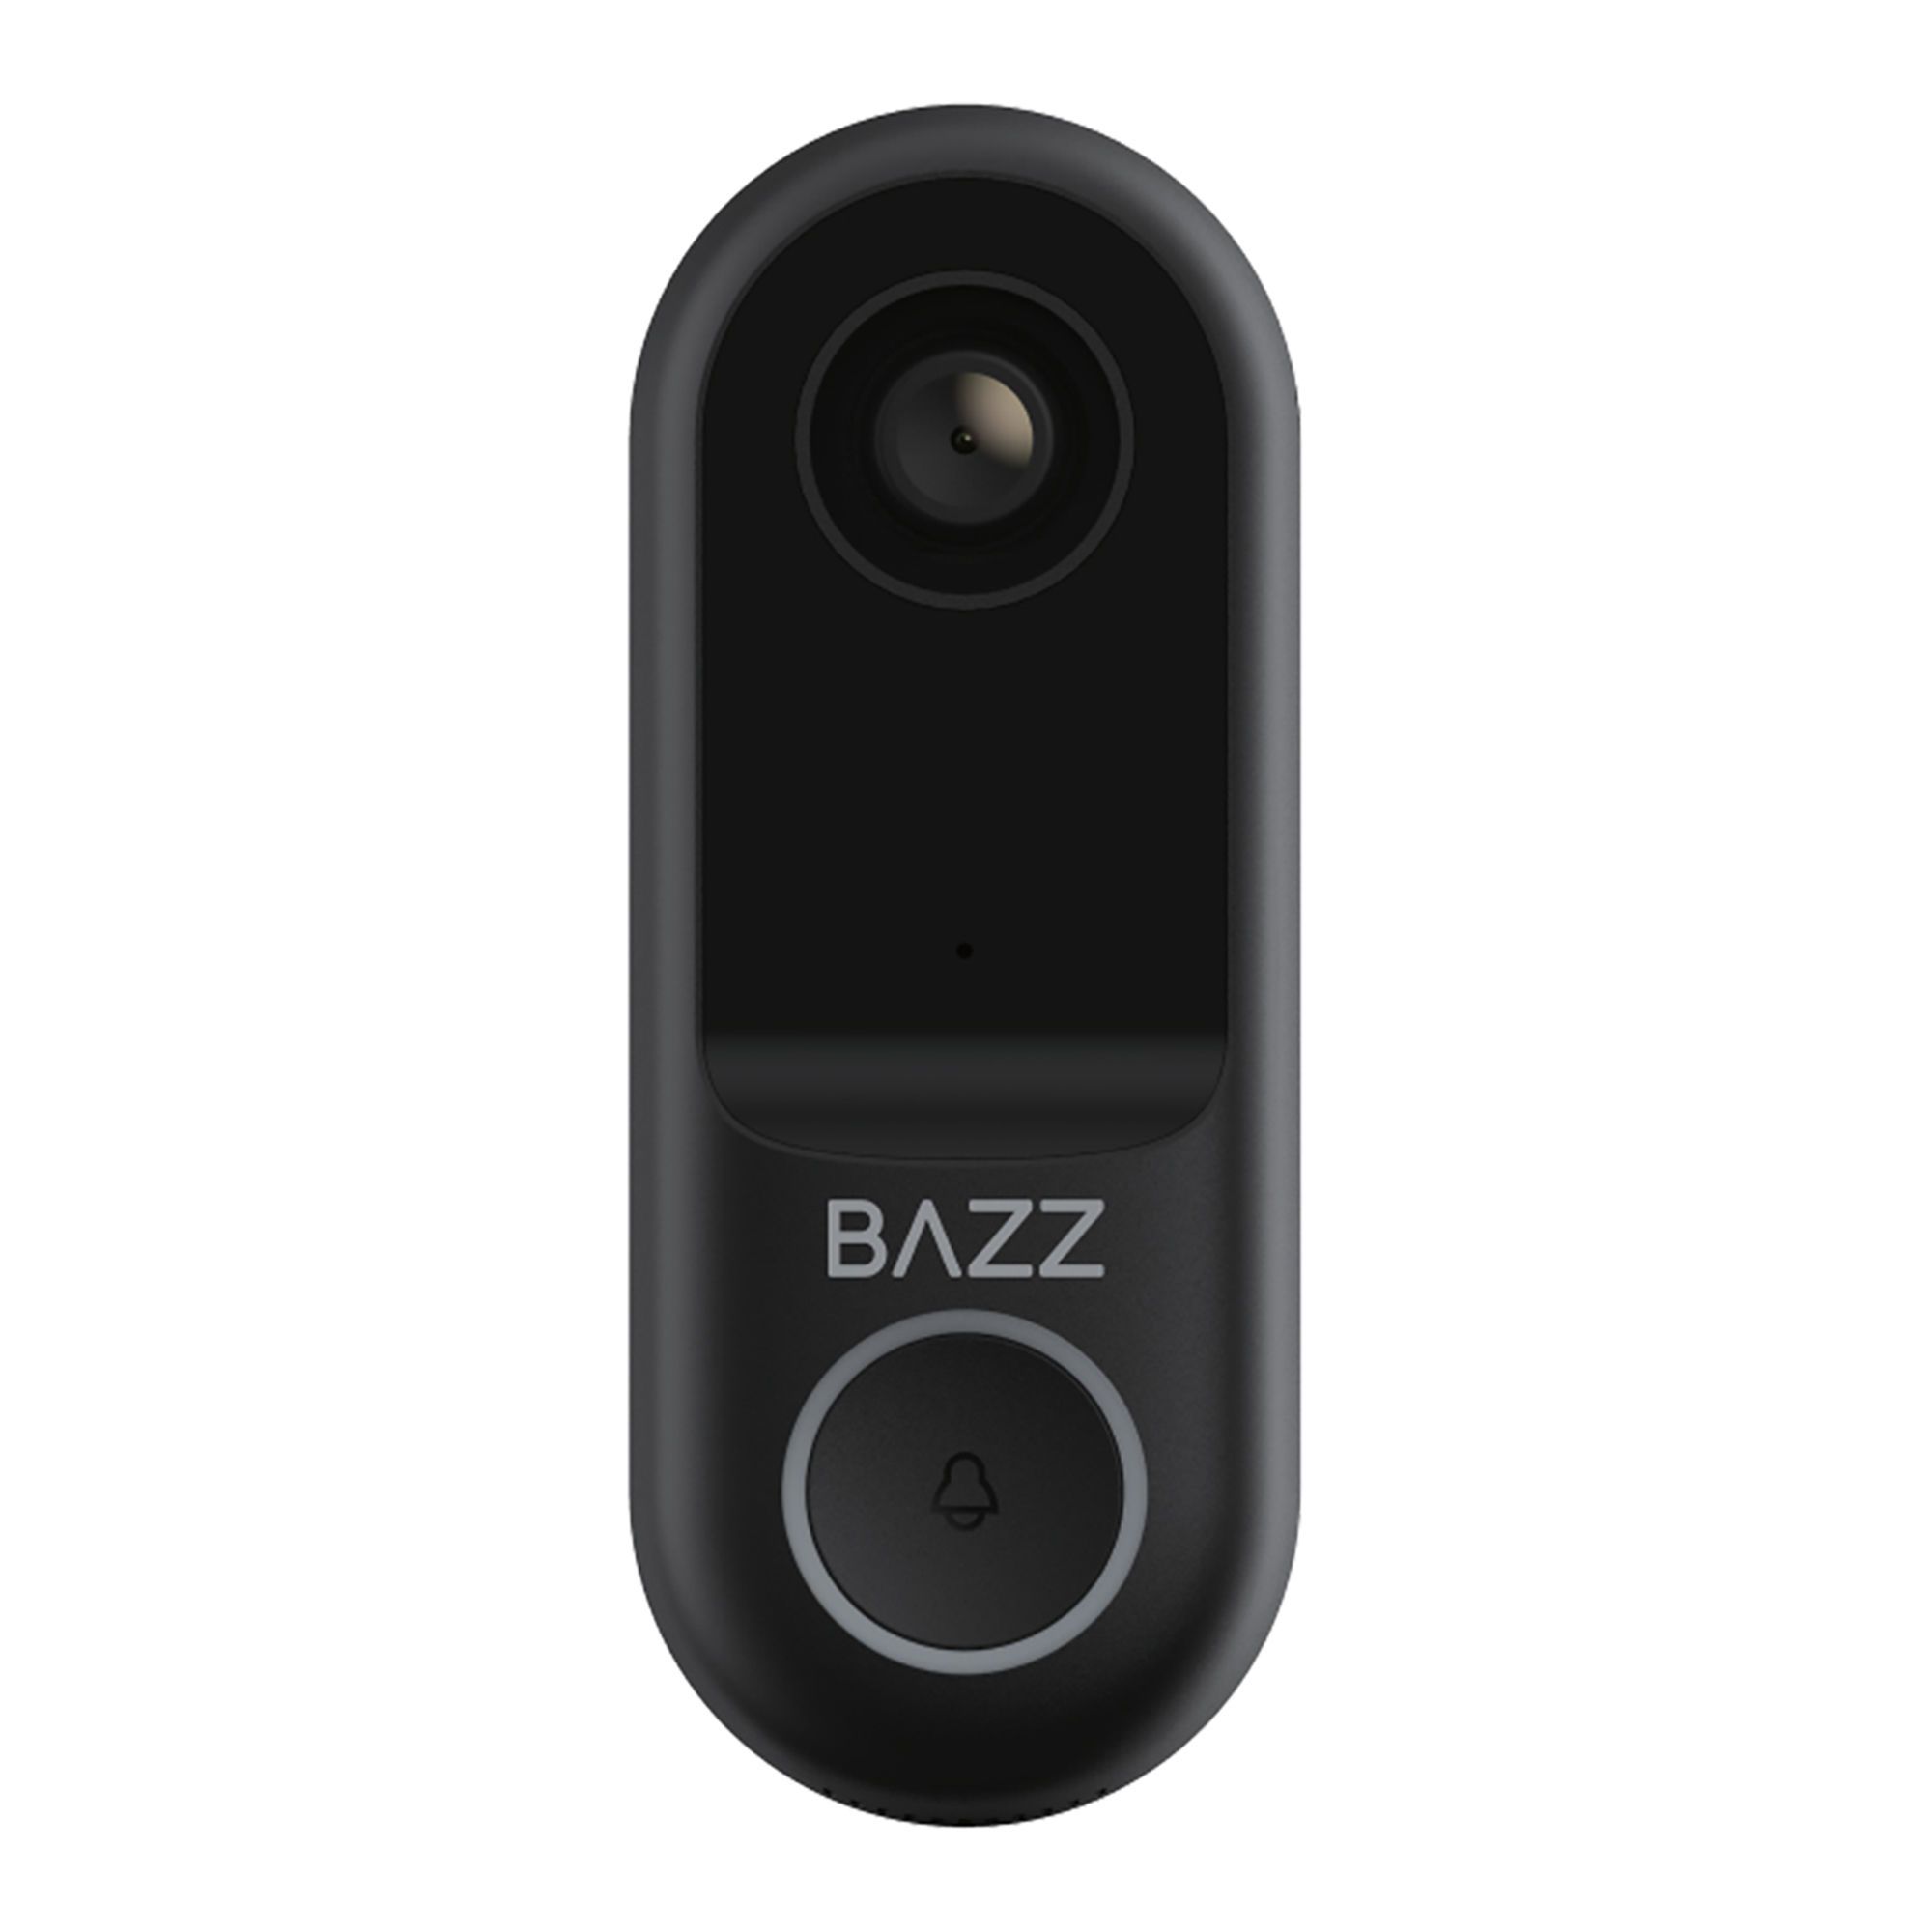 Calex Sonnette de porte intelligente avec caméra - Sonnette de porte vidéo  - 2K - Sans